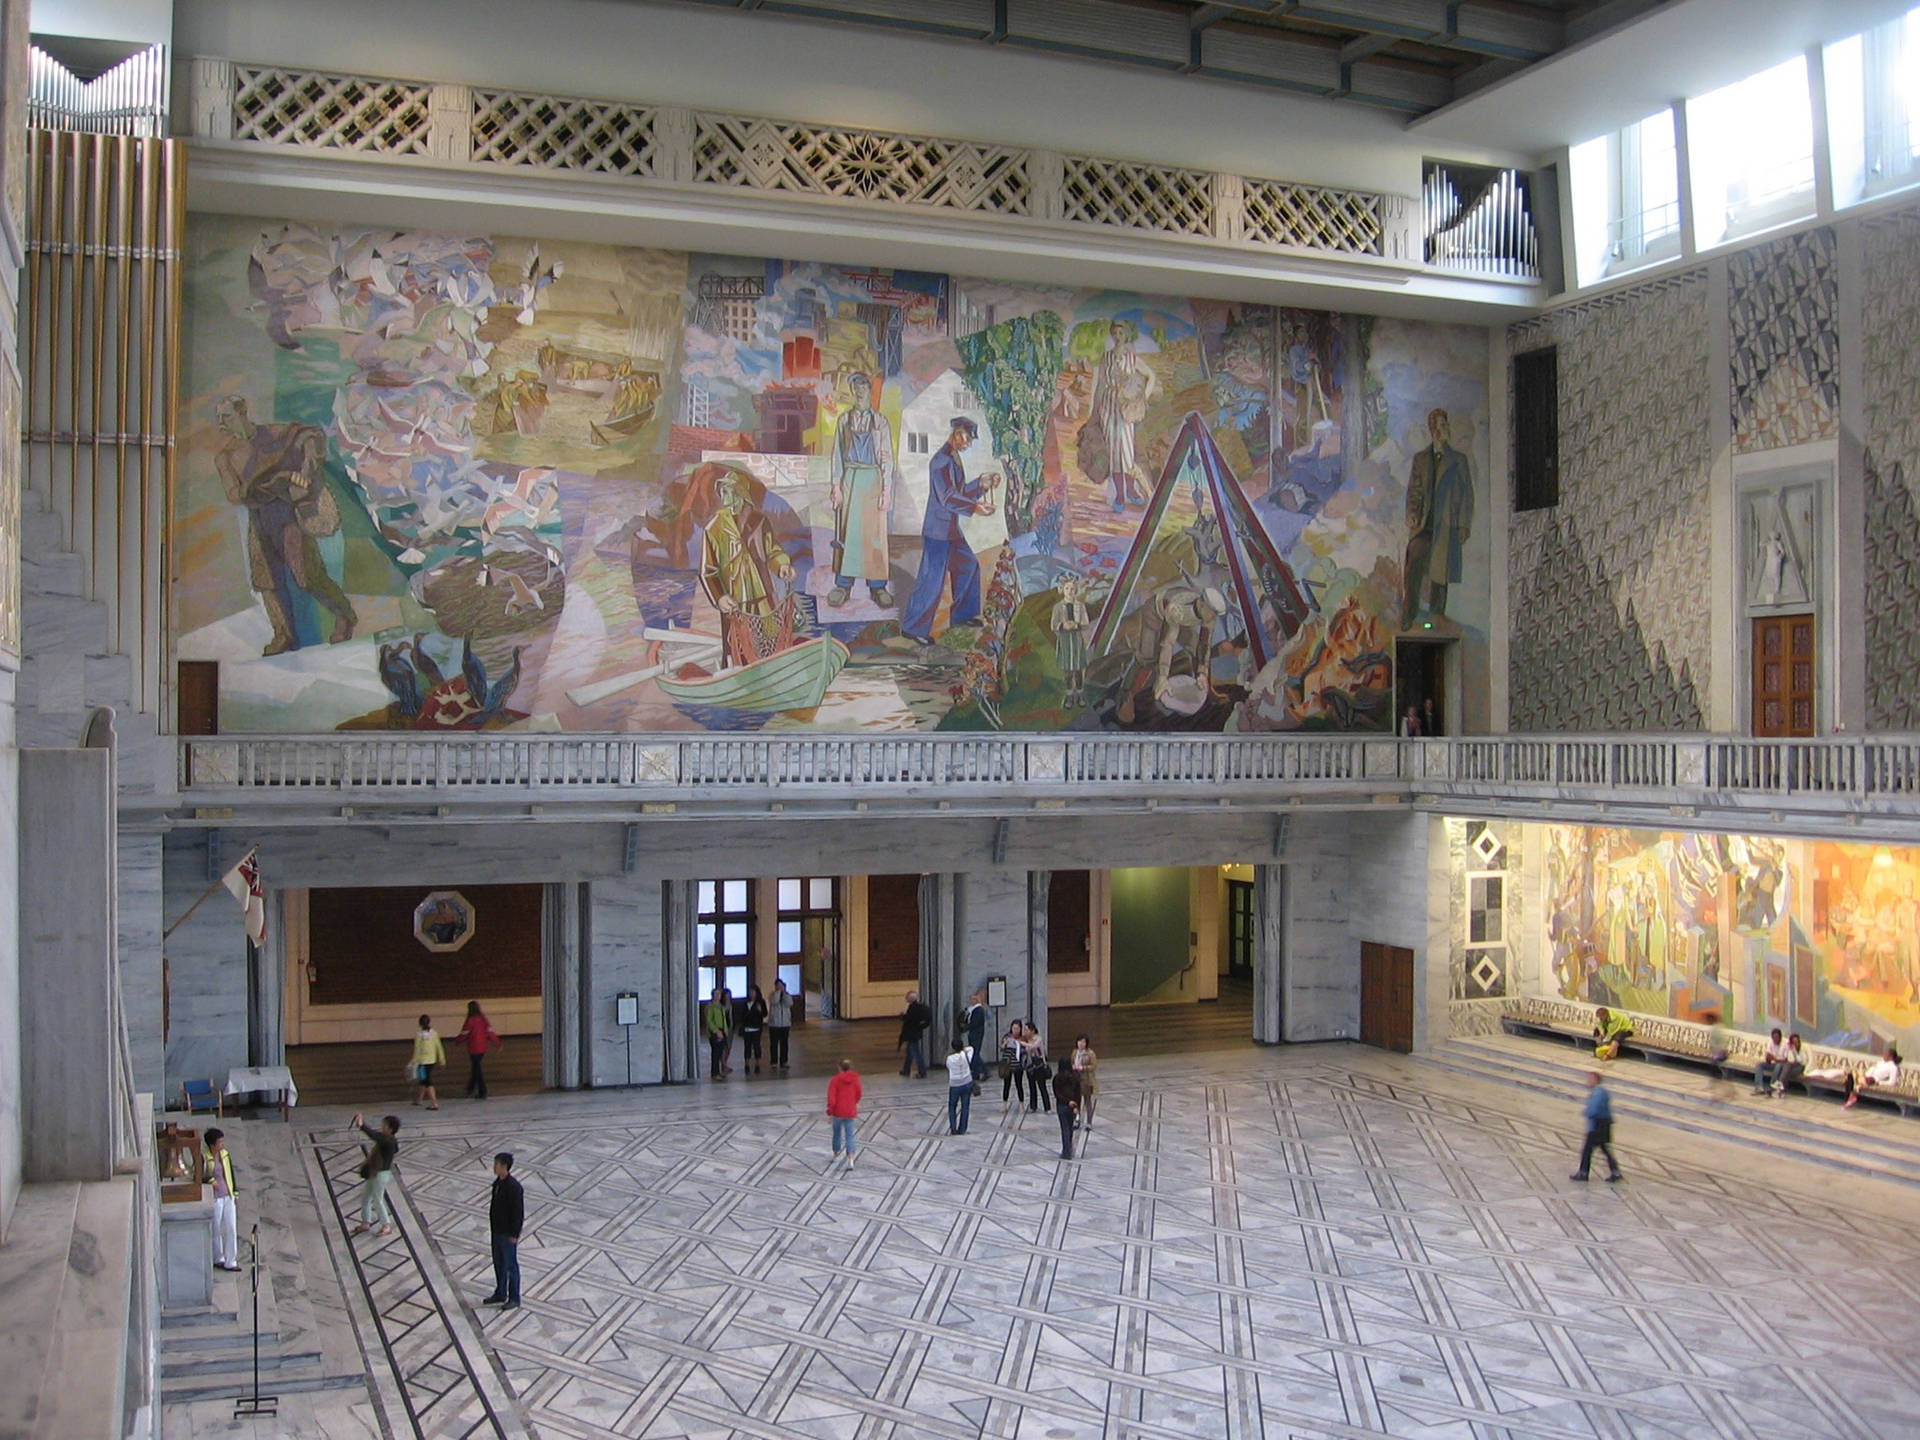 Oslo Mural Wallpaper